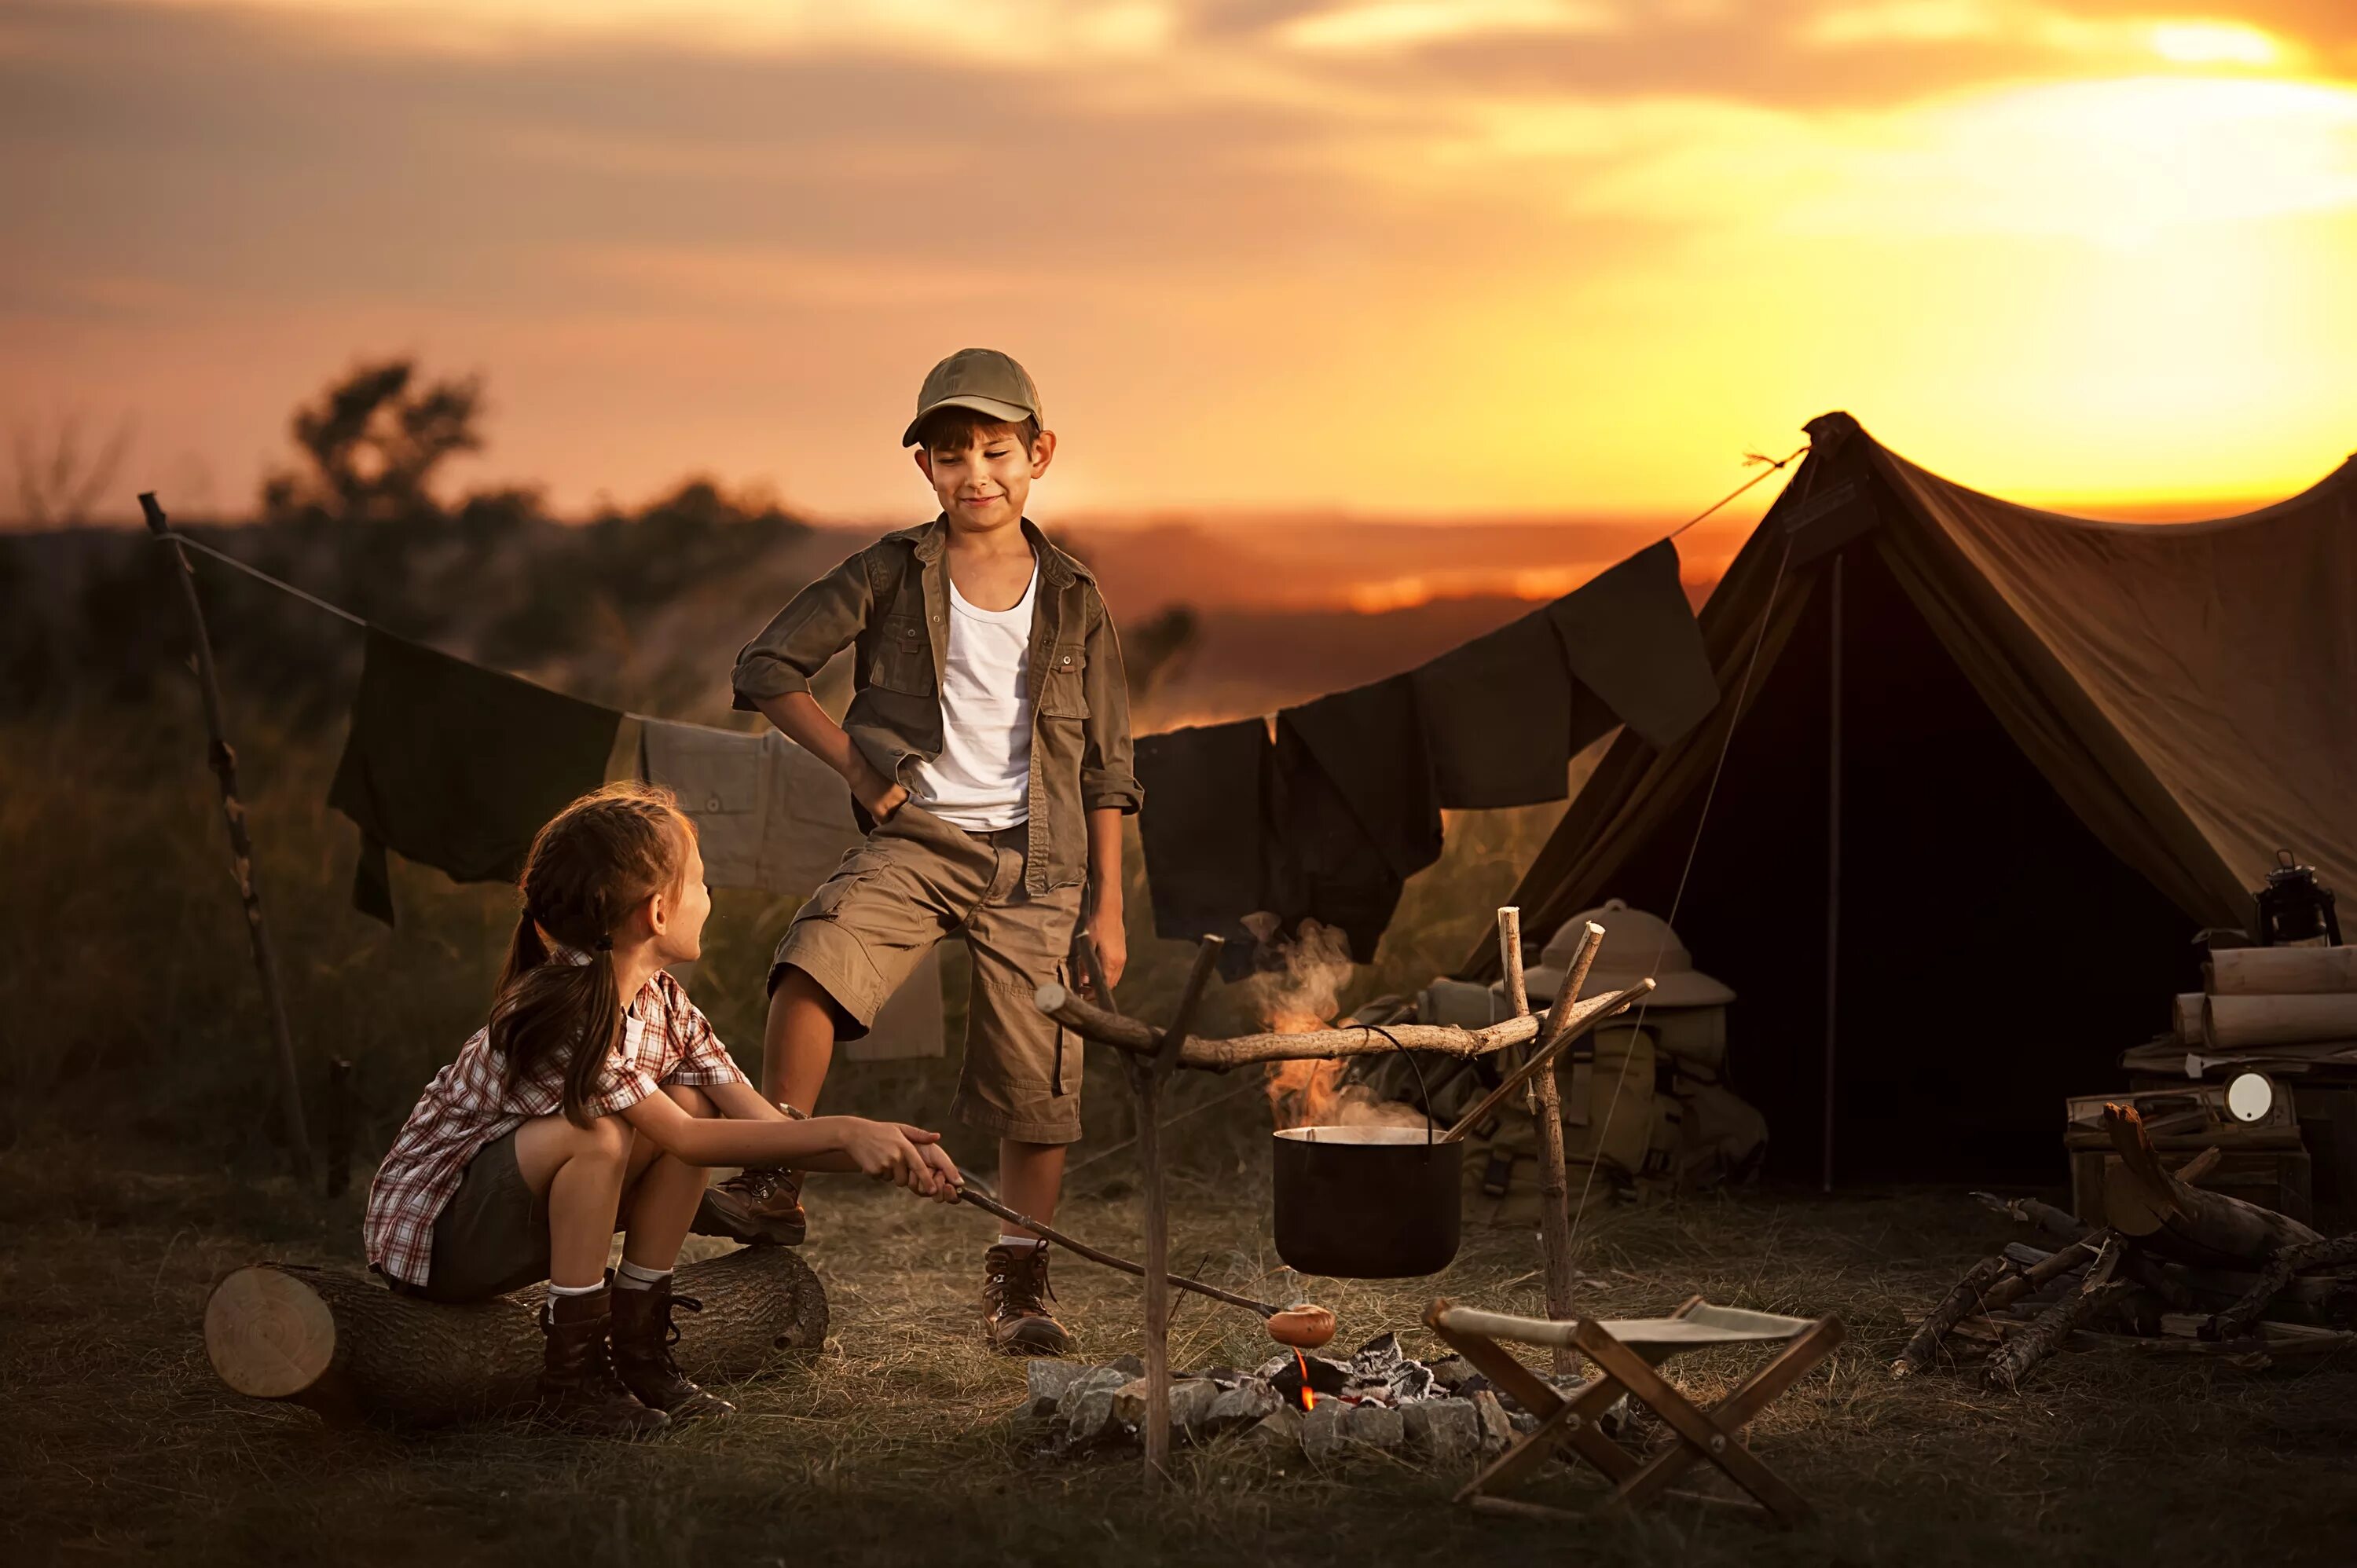 Camping with dad. Поход с детьми на природу. Дети у костра. Отдых на природе. Семья на природе с палаткой.